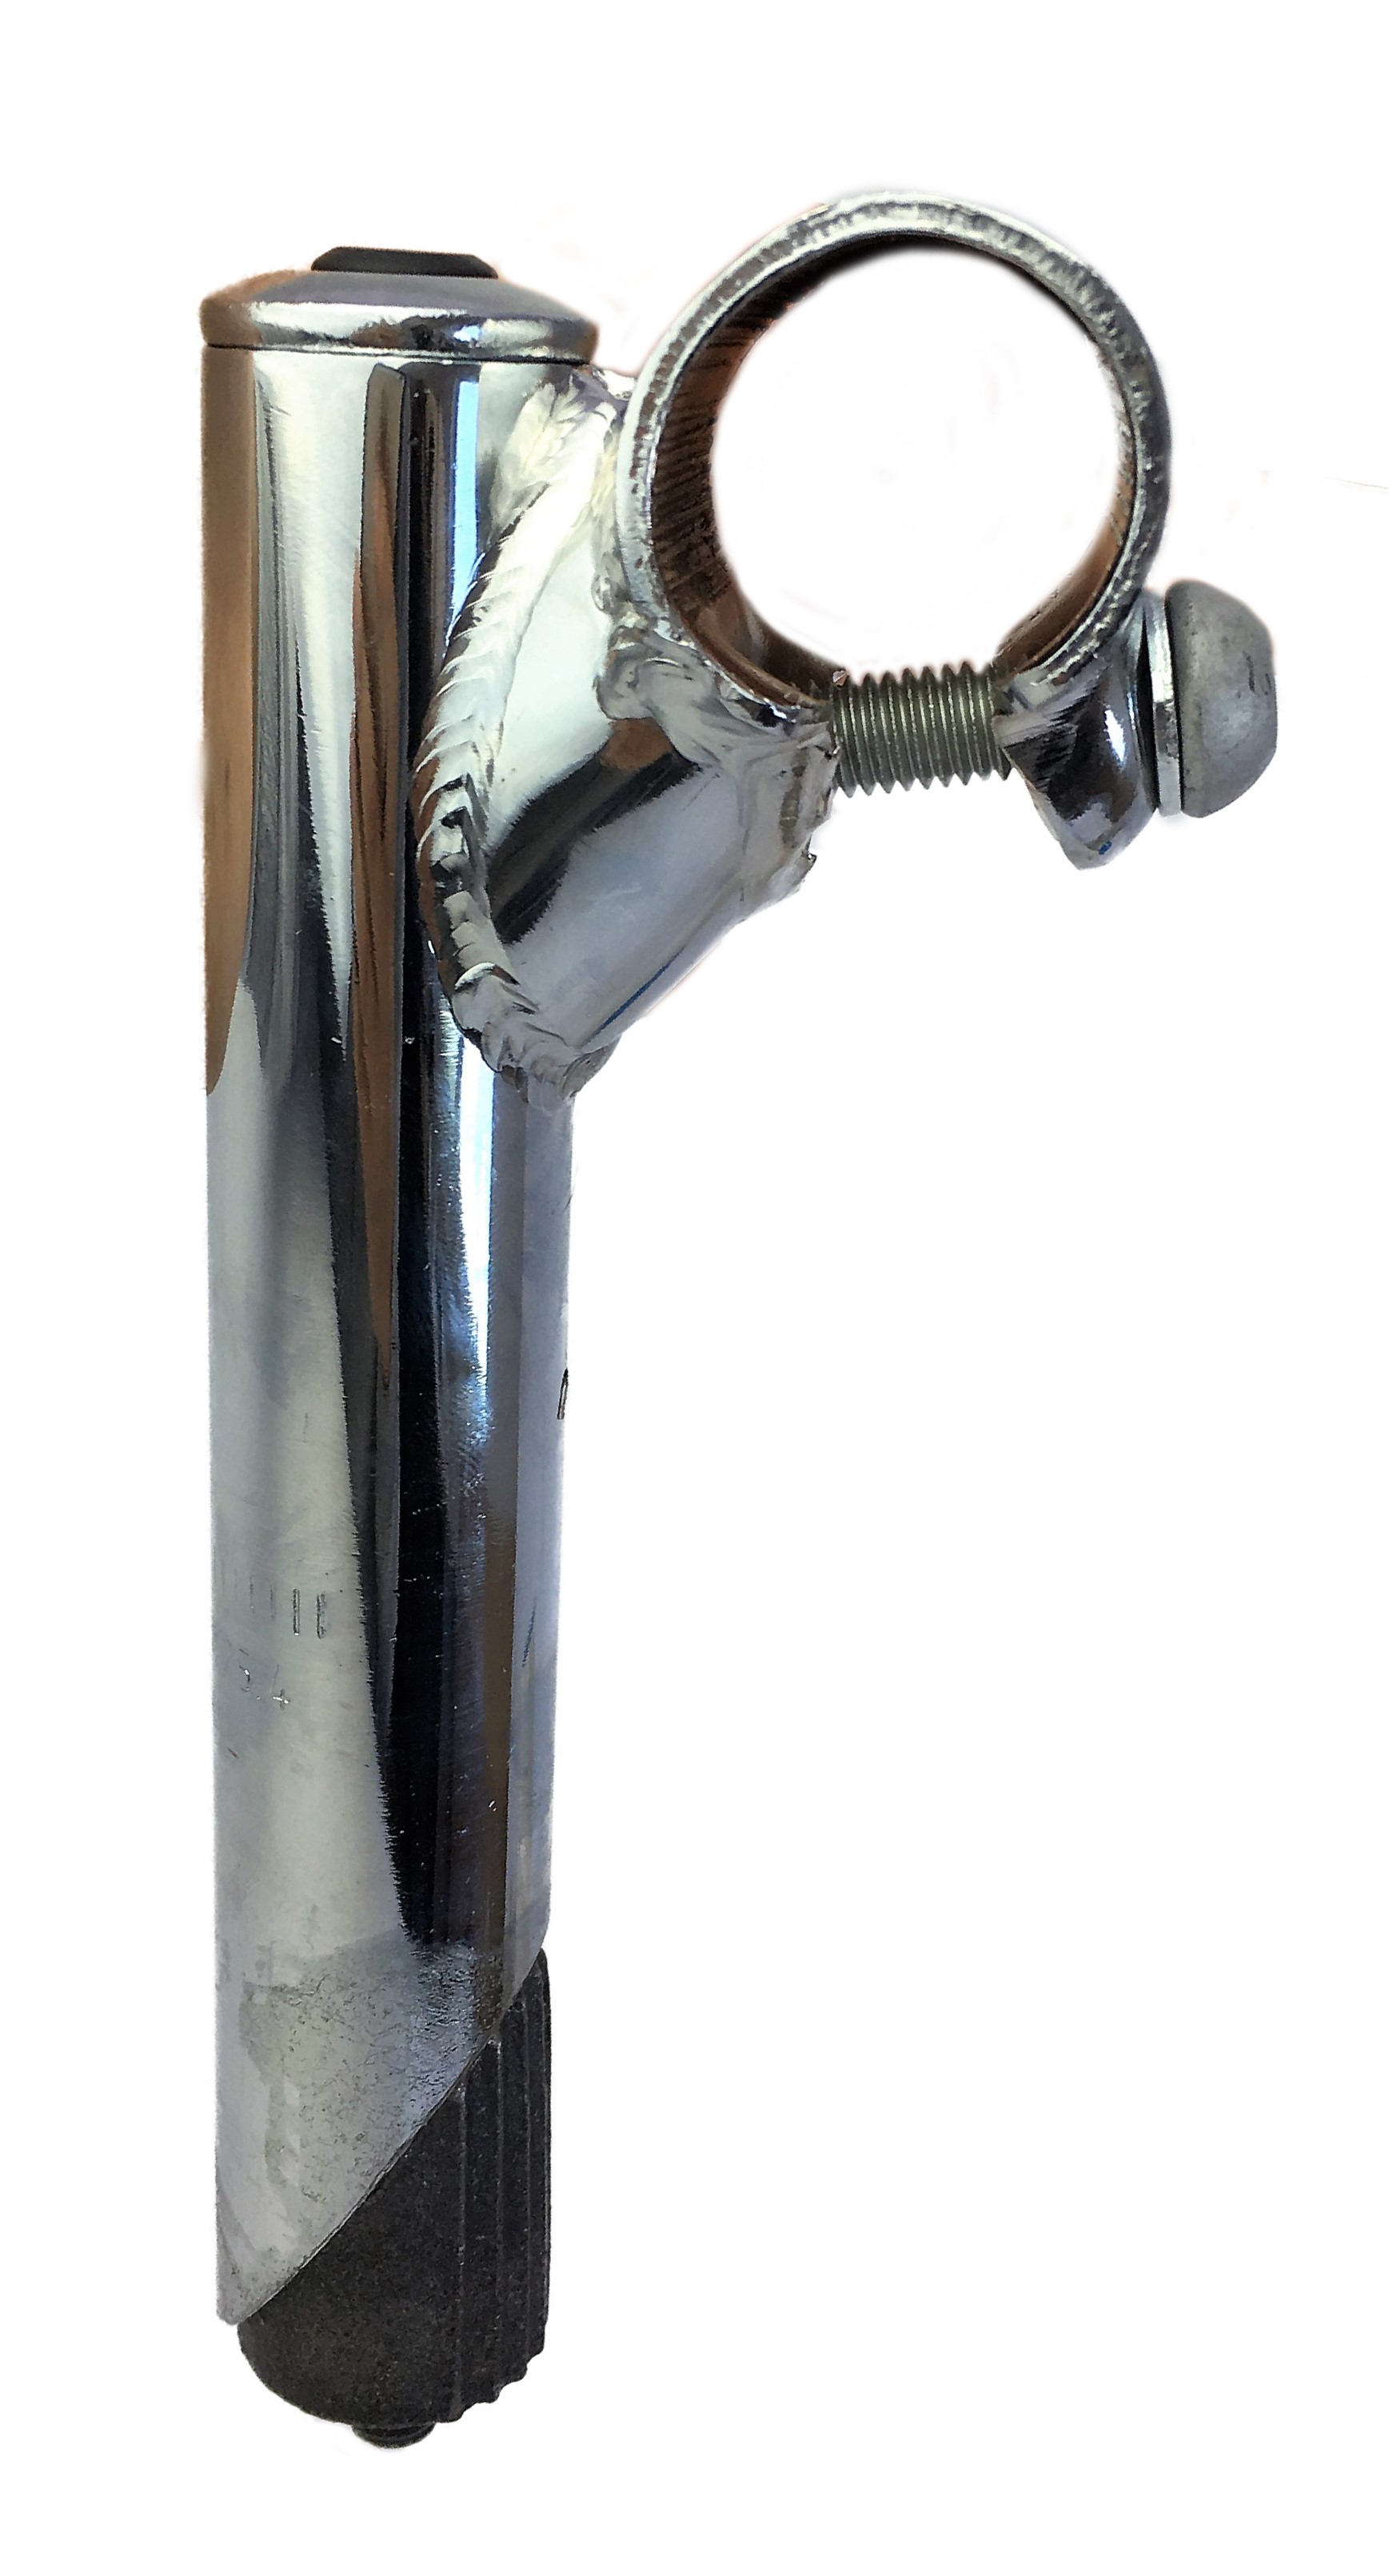 Attacco manubrio 25,4 - 25,4 con cannotto in acciaio dotato di serraggio manubrio a vite semplice, cromato, Humpert Ergotec CV 101